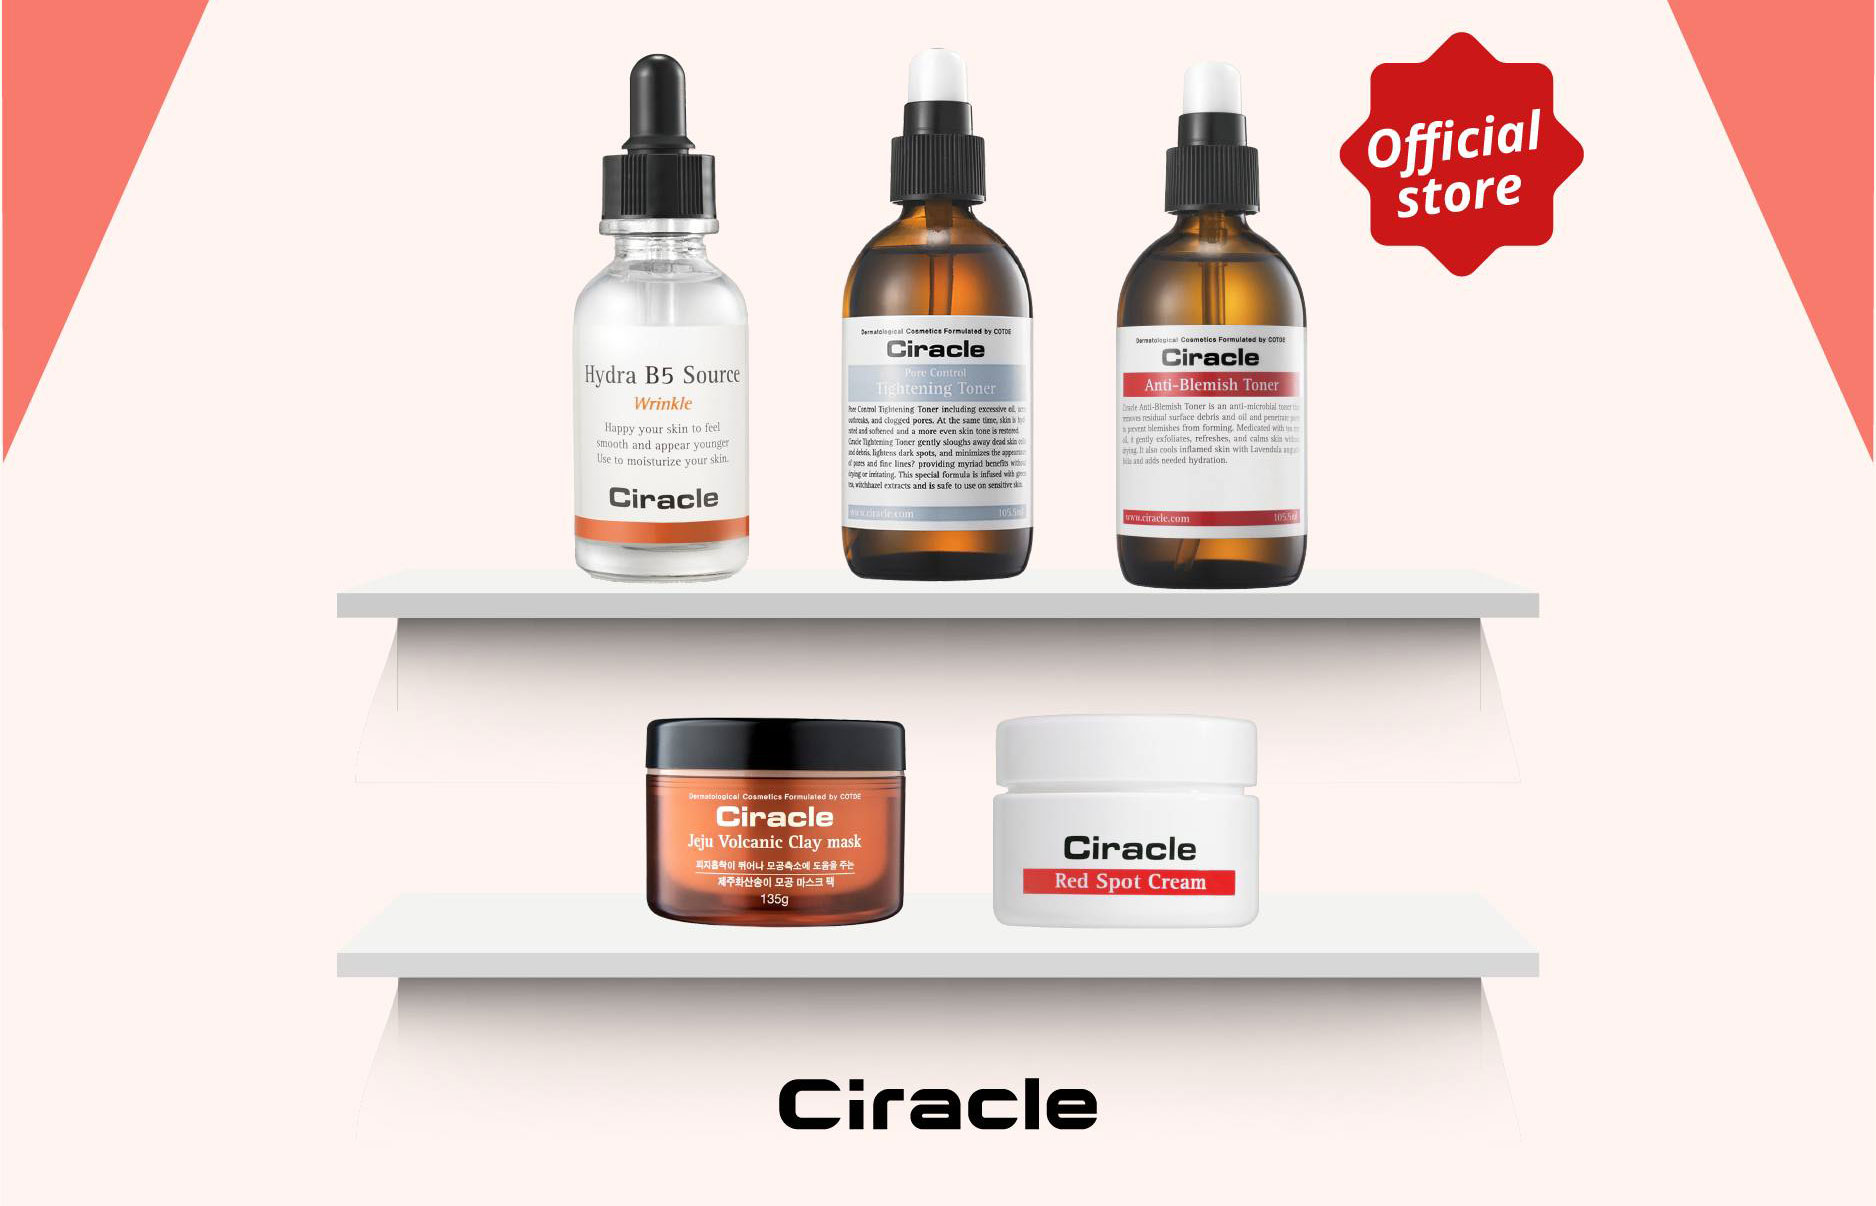 Ciracle là thương hiệu mỹ phẩm cung cấp sản phẩm cho hơn 200 bệnh viện tại Hàn Quốc